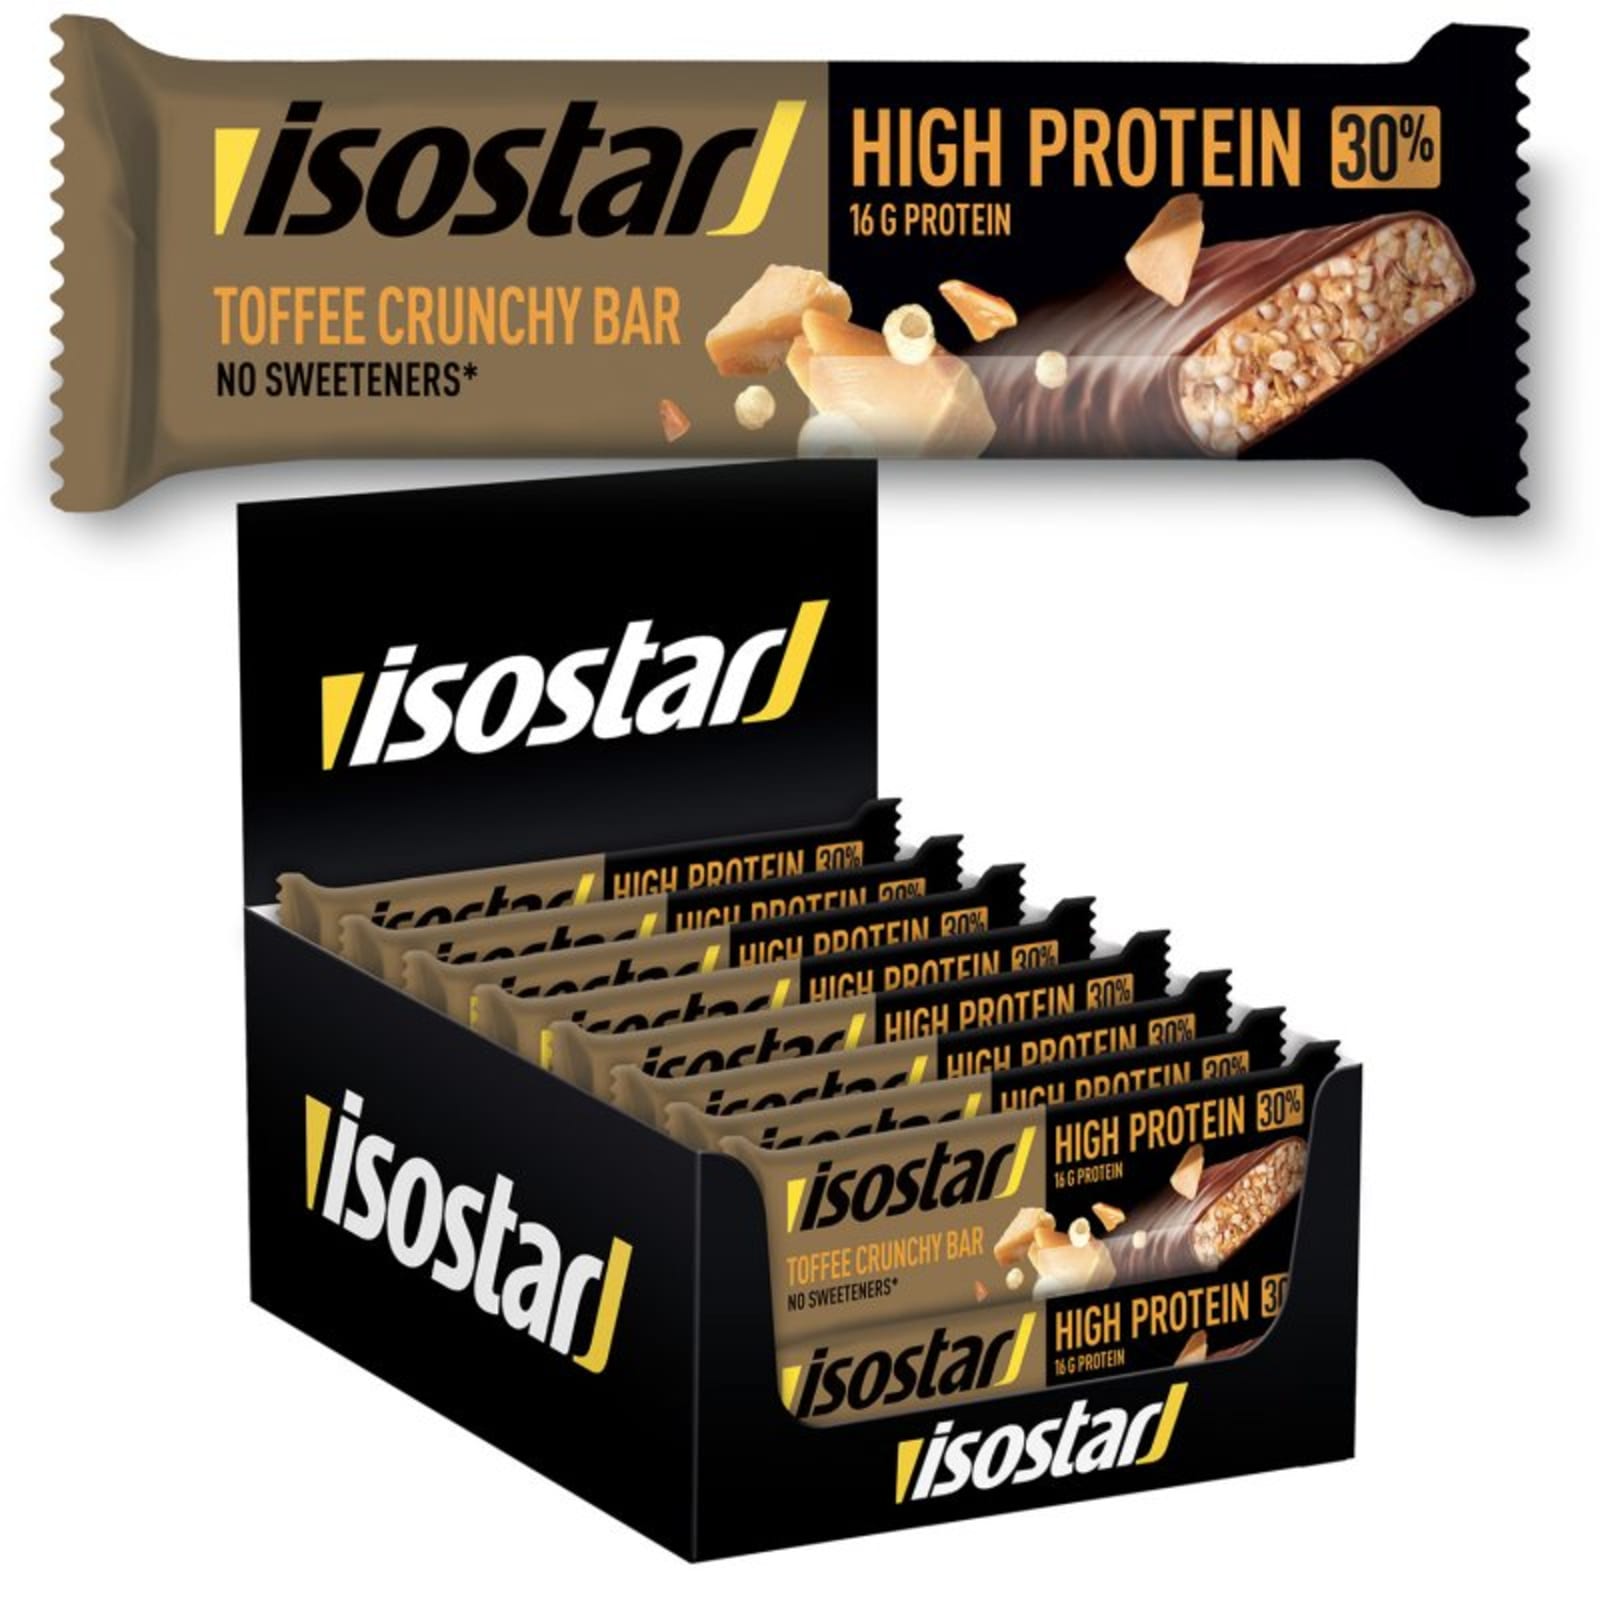 vergeven saai Verheugen High Protein 30 (16x55g) van Isostar kopen | Bodylab Shop